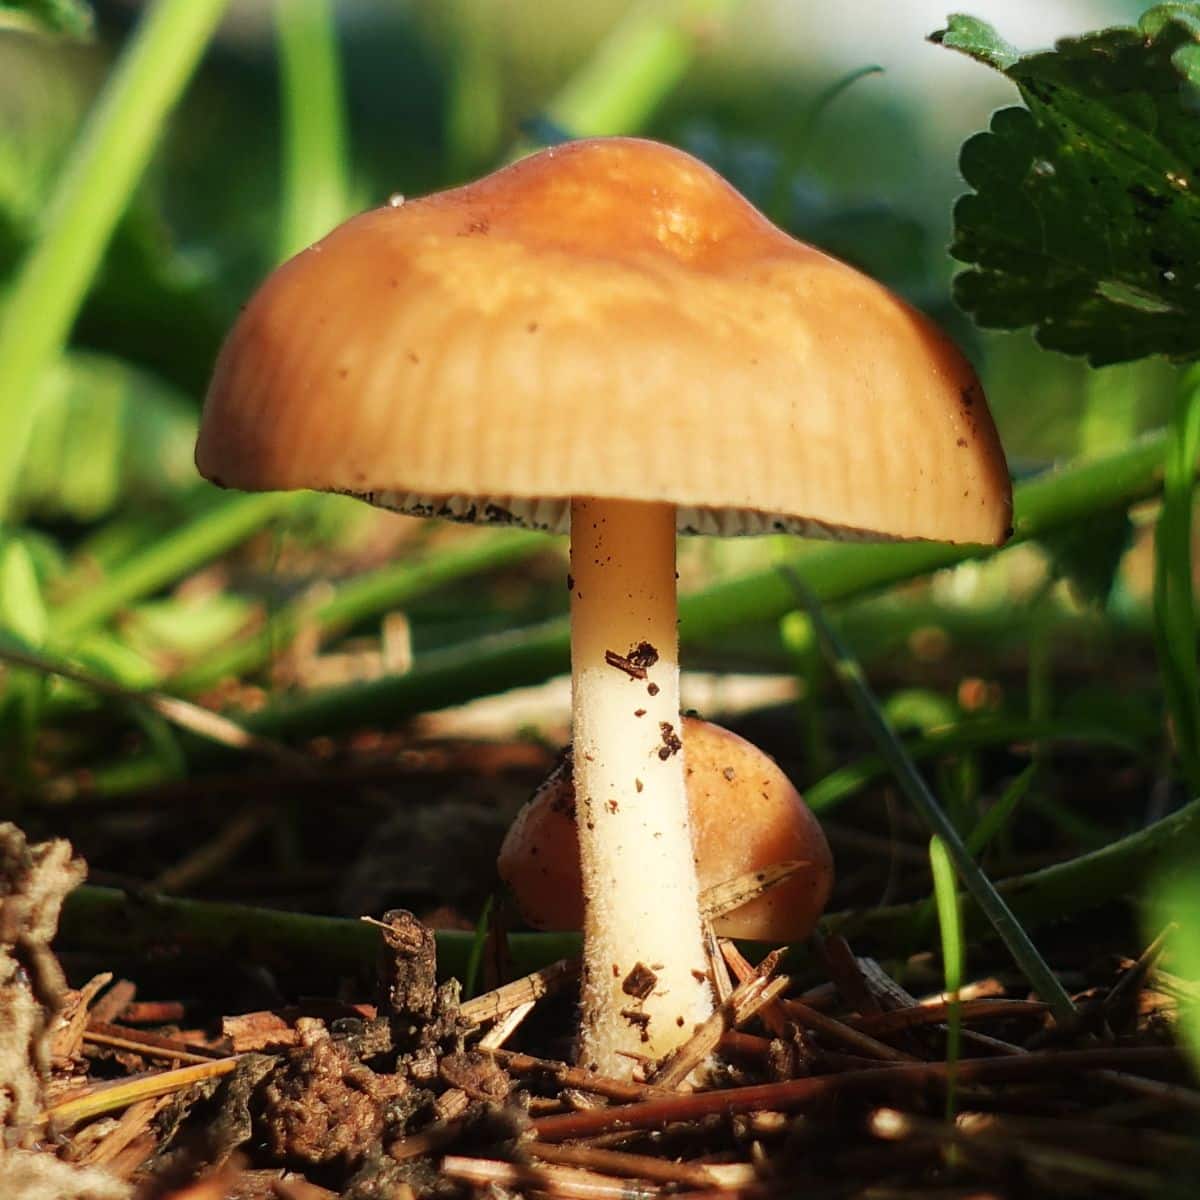 fairy ring mushroom in soil